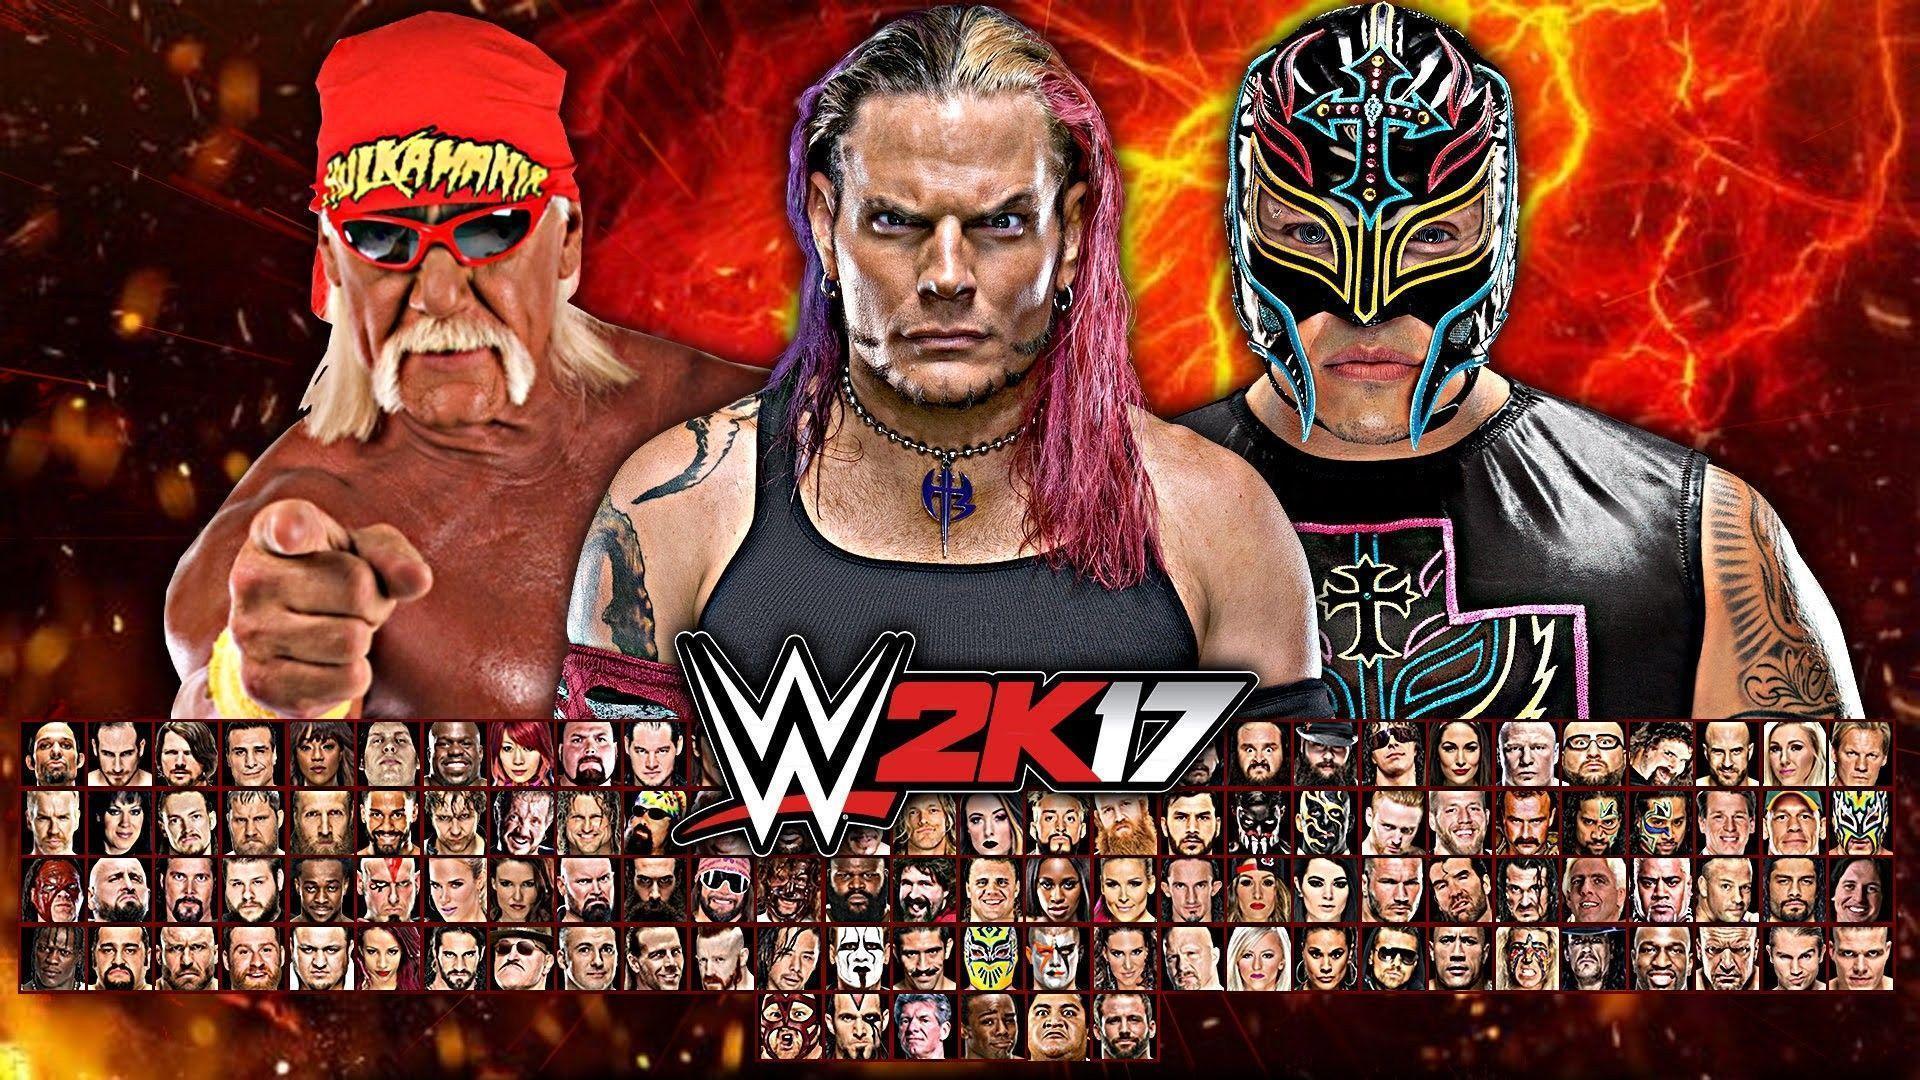 WWE 2K17 wallpaper free. WWE 2K17 wallpaper HD